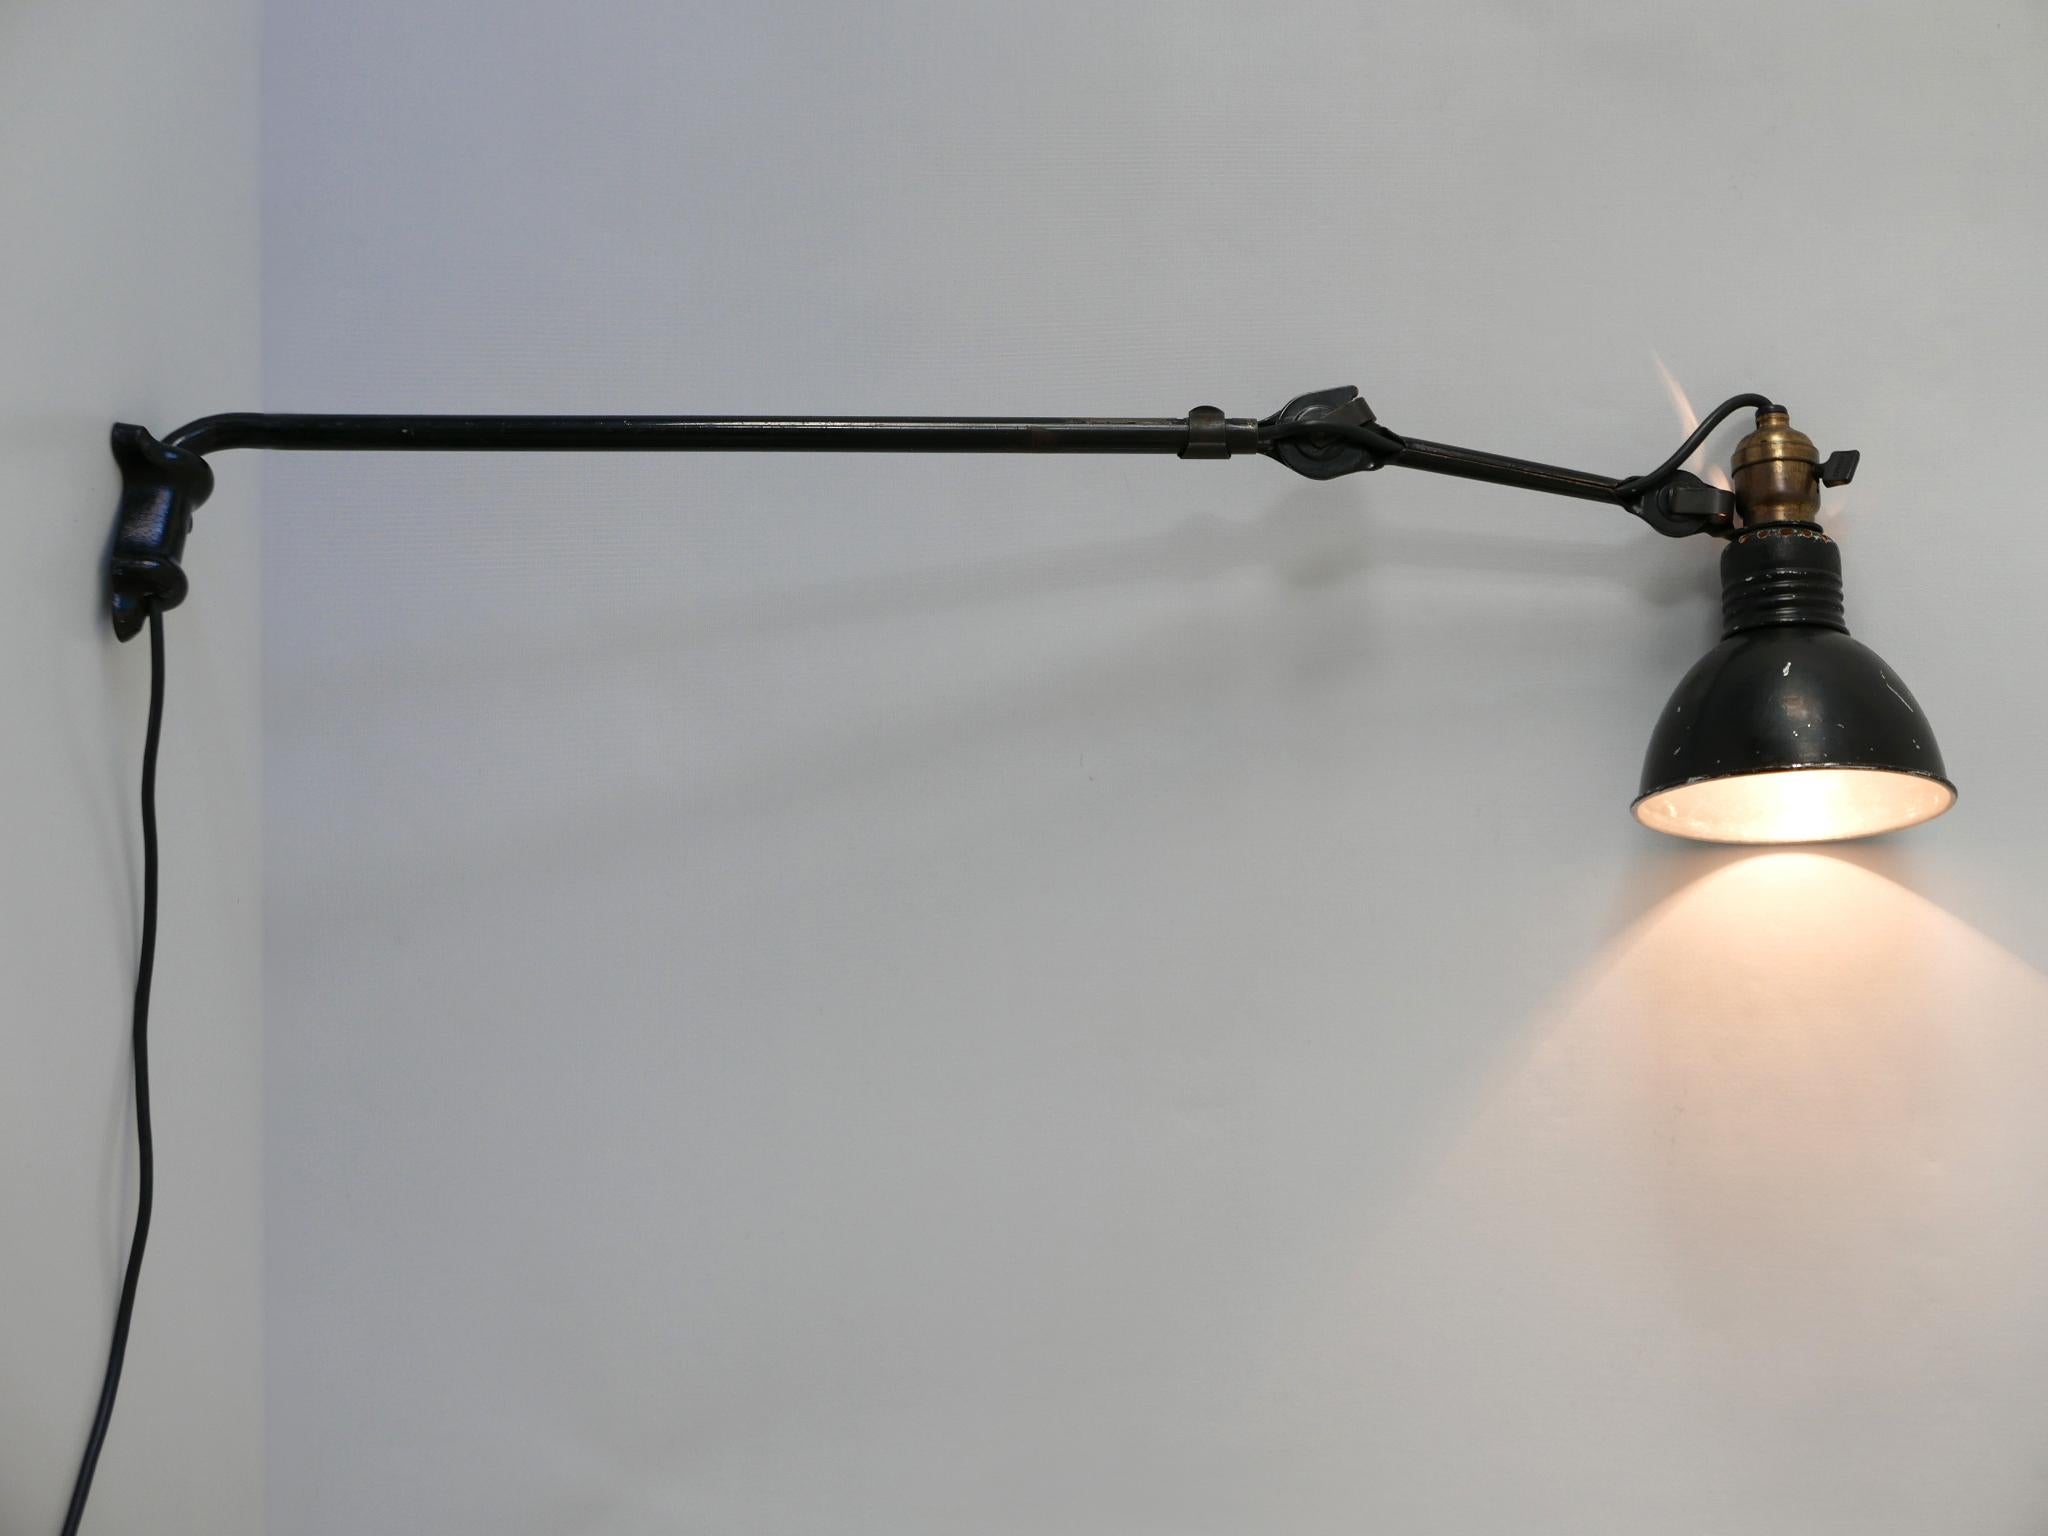 Lampe de bureau ou applique articulée moderniste modèle 203. Conçu dans les années 1920 par Bernard-Albin Gras. Fabriqué par Gras, France, années 1920.

Réalisée en acier émaillé noir et en aluminium, la lampe nécessite 1 ampoule à baïonnette B22,